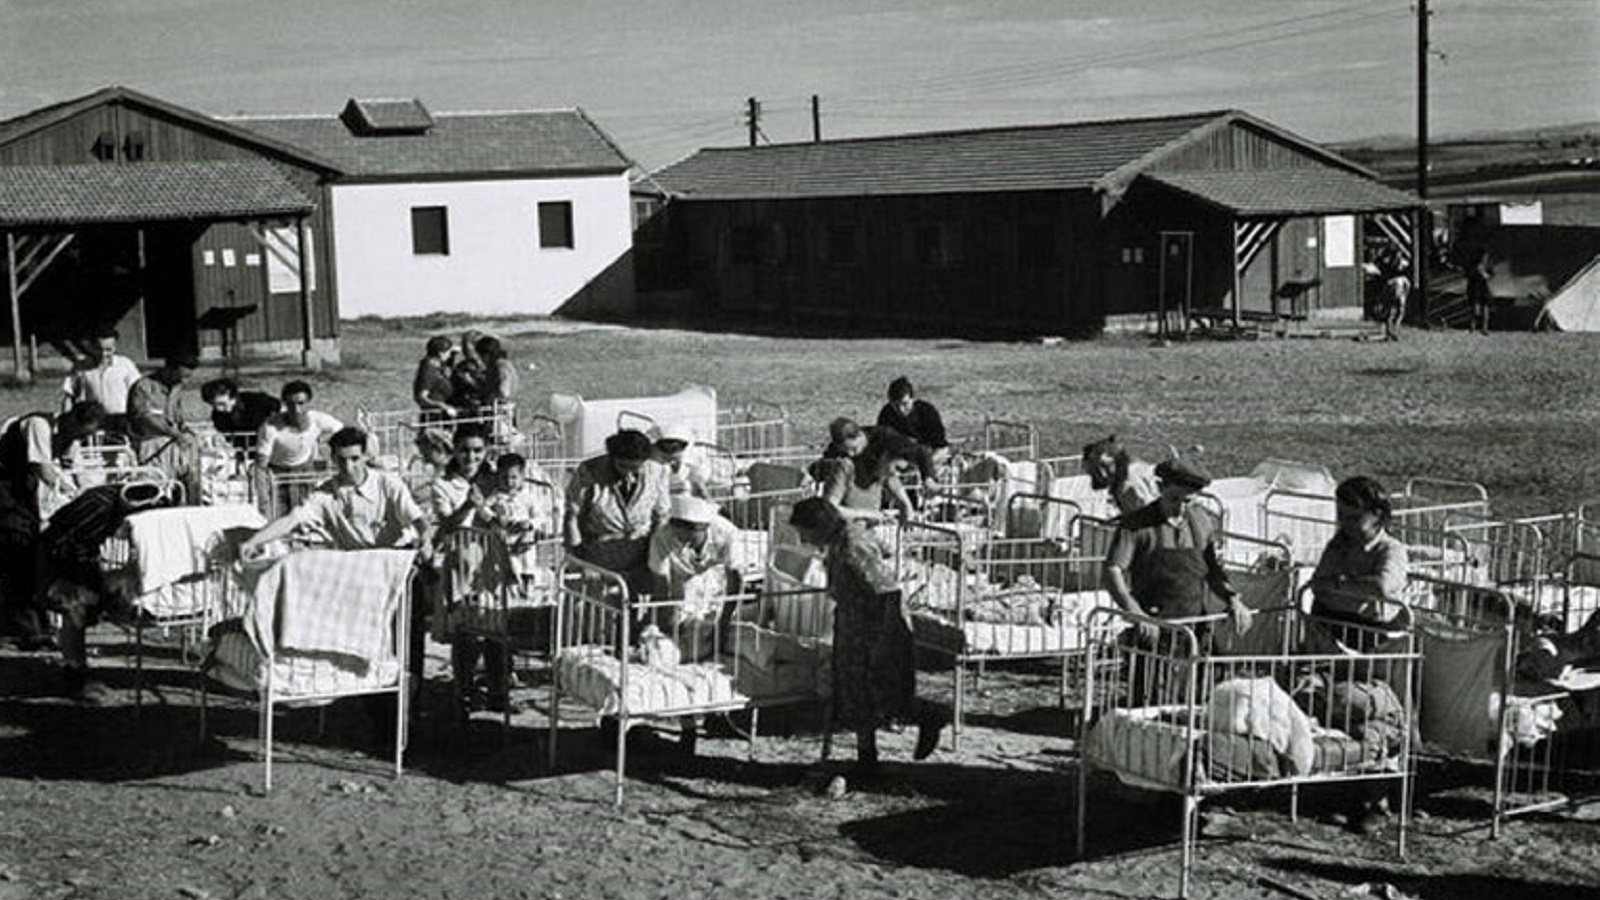 صورة أرشيفية من موقع غيتي موصوفة بـ "مهاجرون يهود جدد يجلبون أطفالهم إلى الخارج إلى الشمس الدافئة في مخيم المهاجرين في 1 ديسمبر/كانون الأول 1947 في رعنانا، خلال الانتداب البريطاني لفلسطين، فيما سيصبح العام التالي إسرائيل".